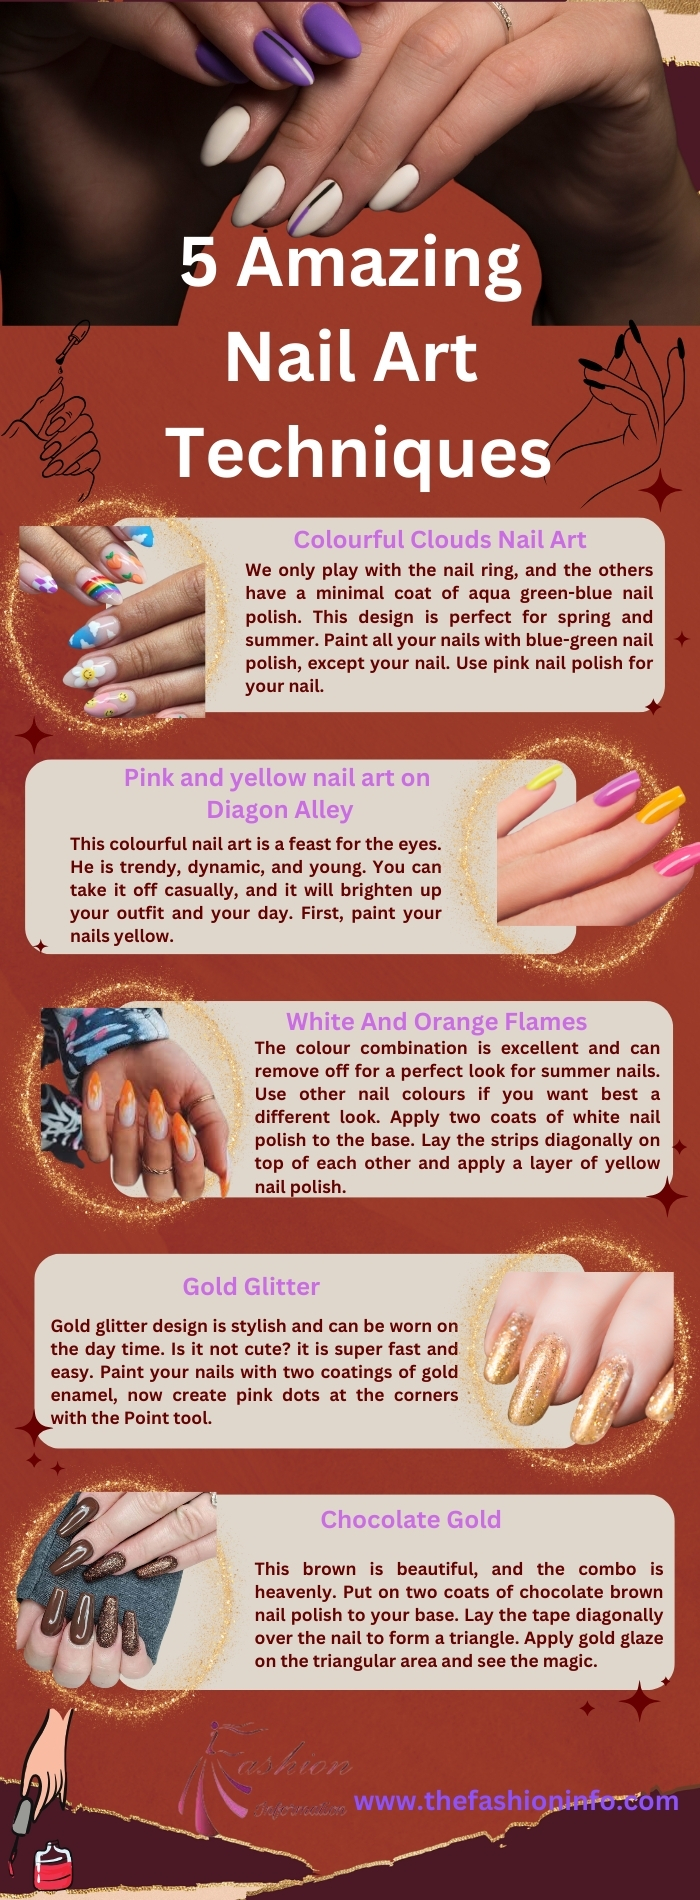 5 Amazing Nail Art Techniques